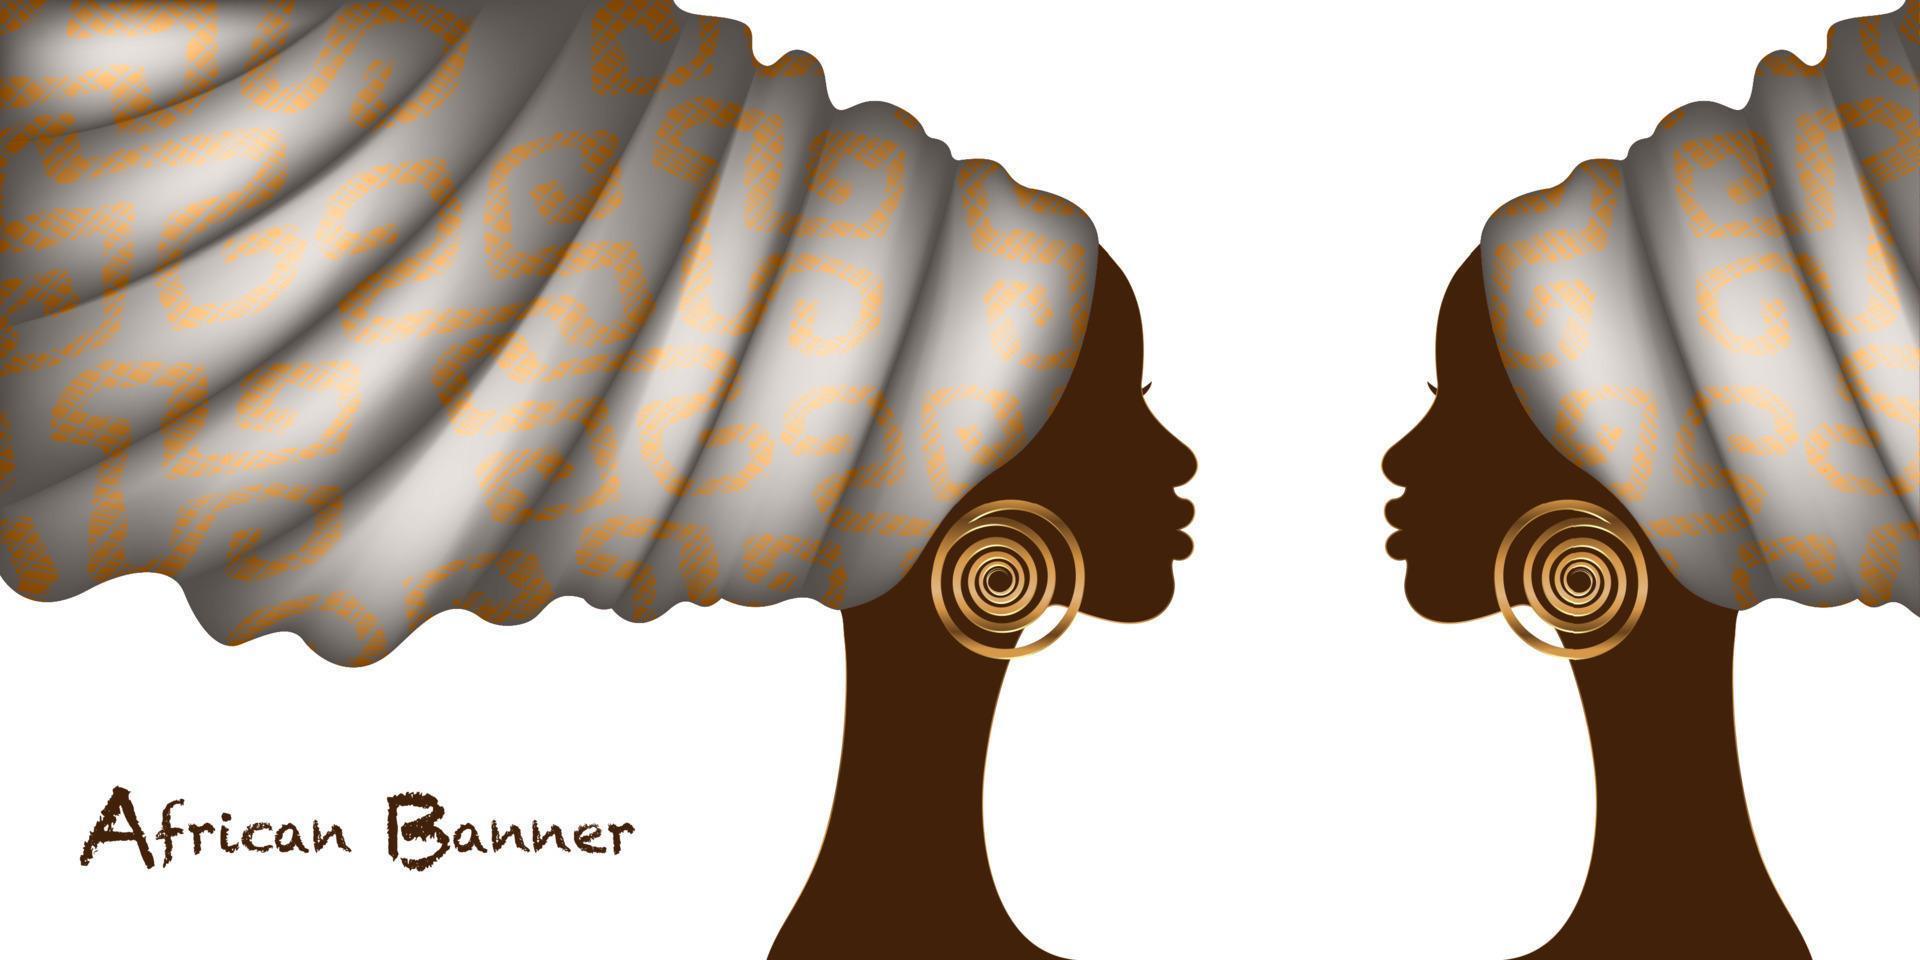 afrikaanse vrouwenbanner in mode wax print tulband, schoonheid van twee tweelingen. zwarte vrouw portret afro kapsels, haar jurk concept. Afrika etnische sjabloon geïsoleerd op een witte achtergrond vector